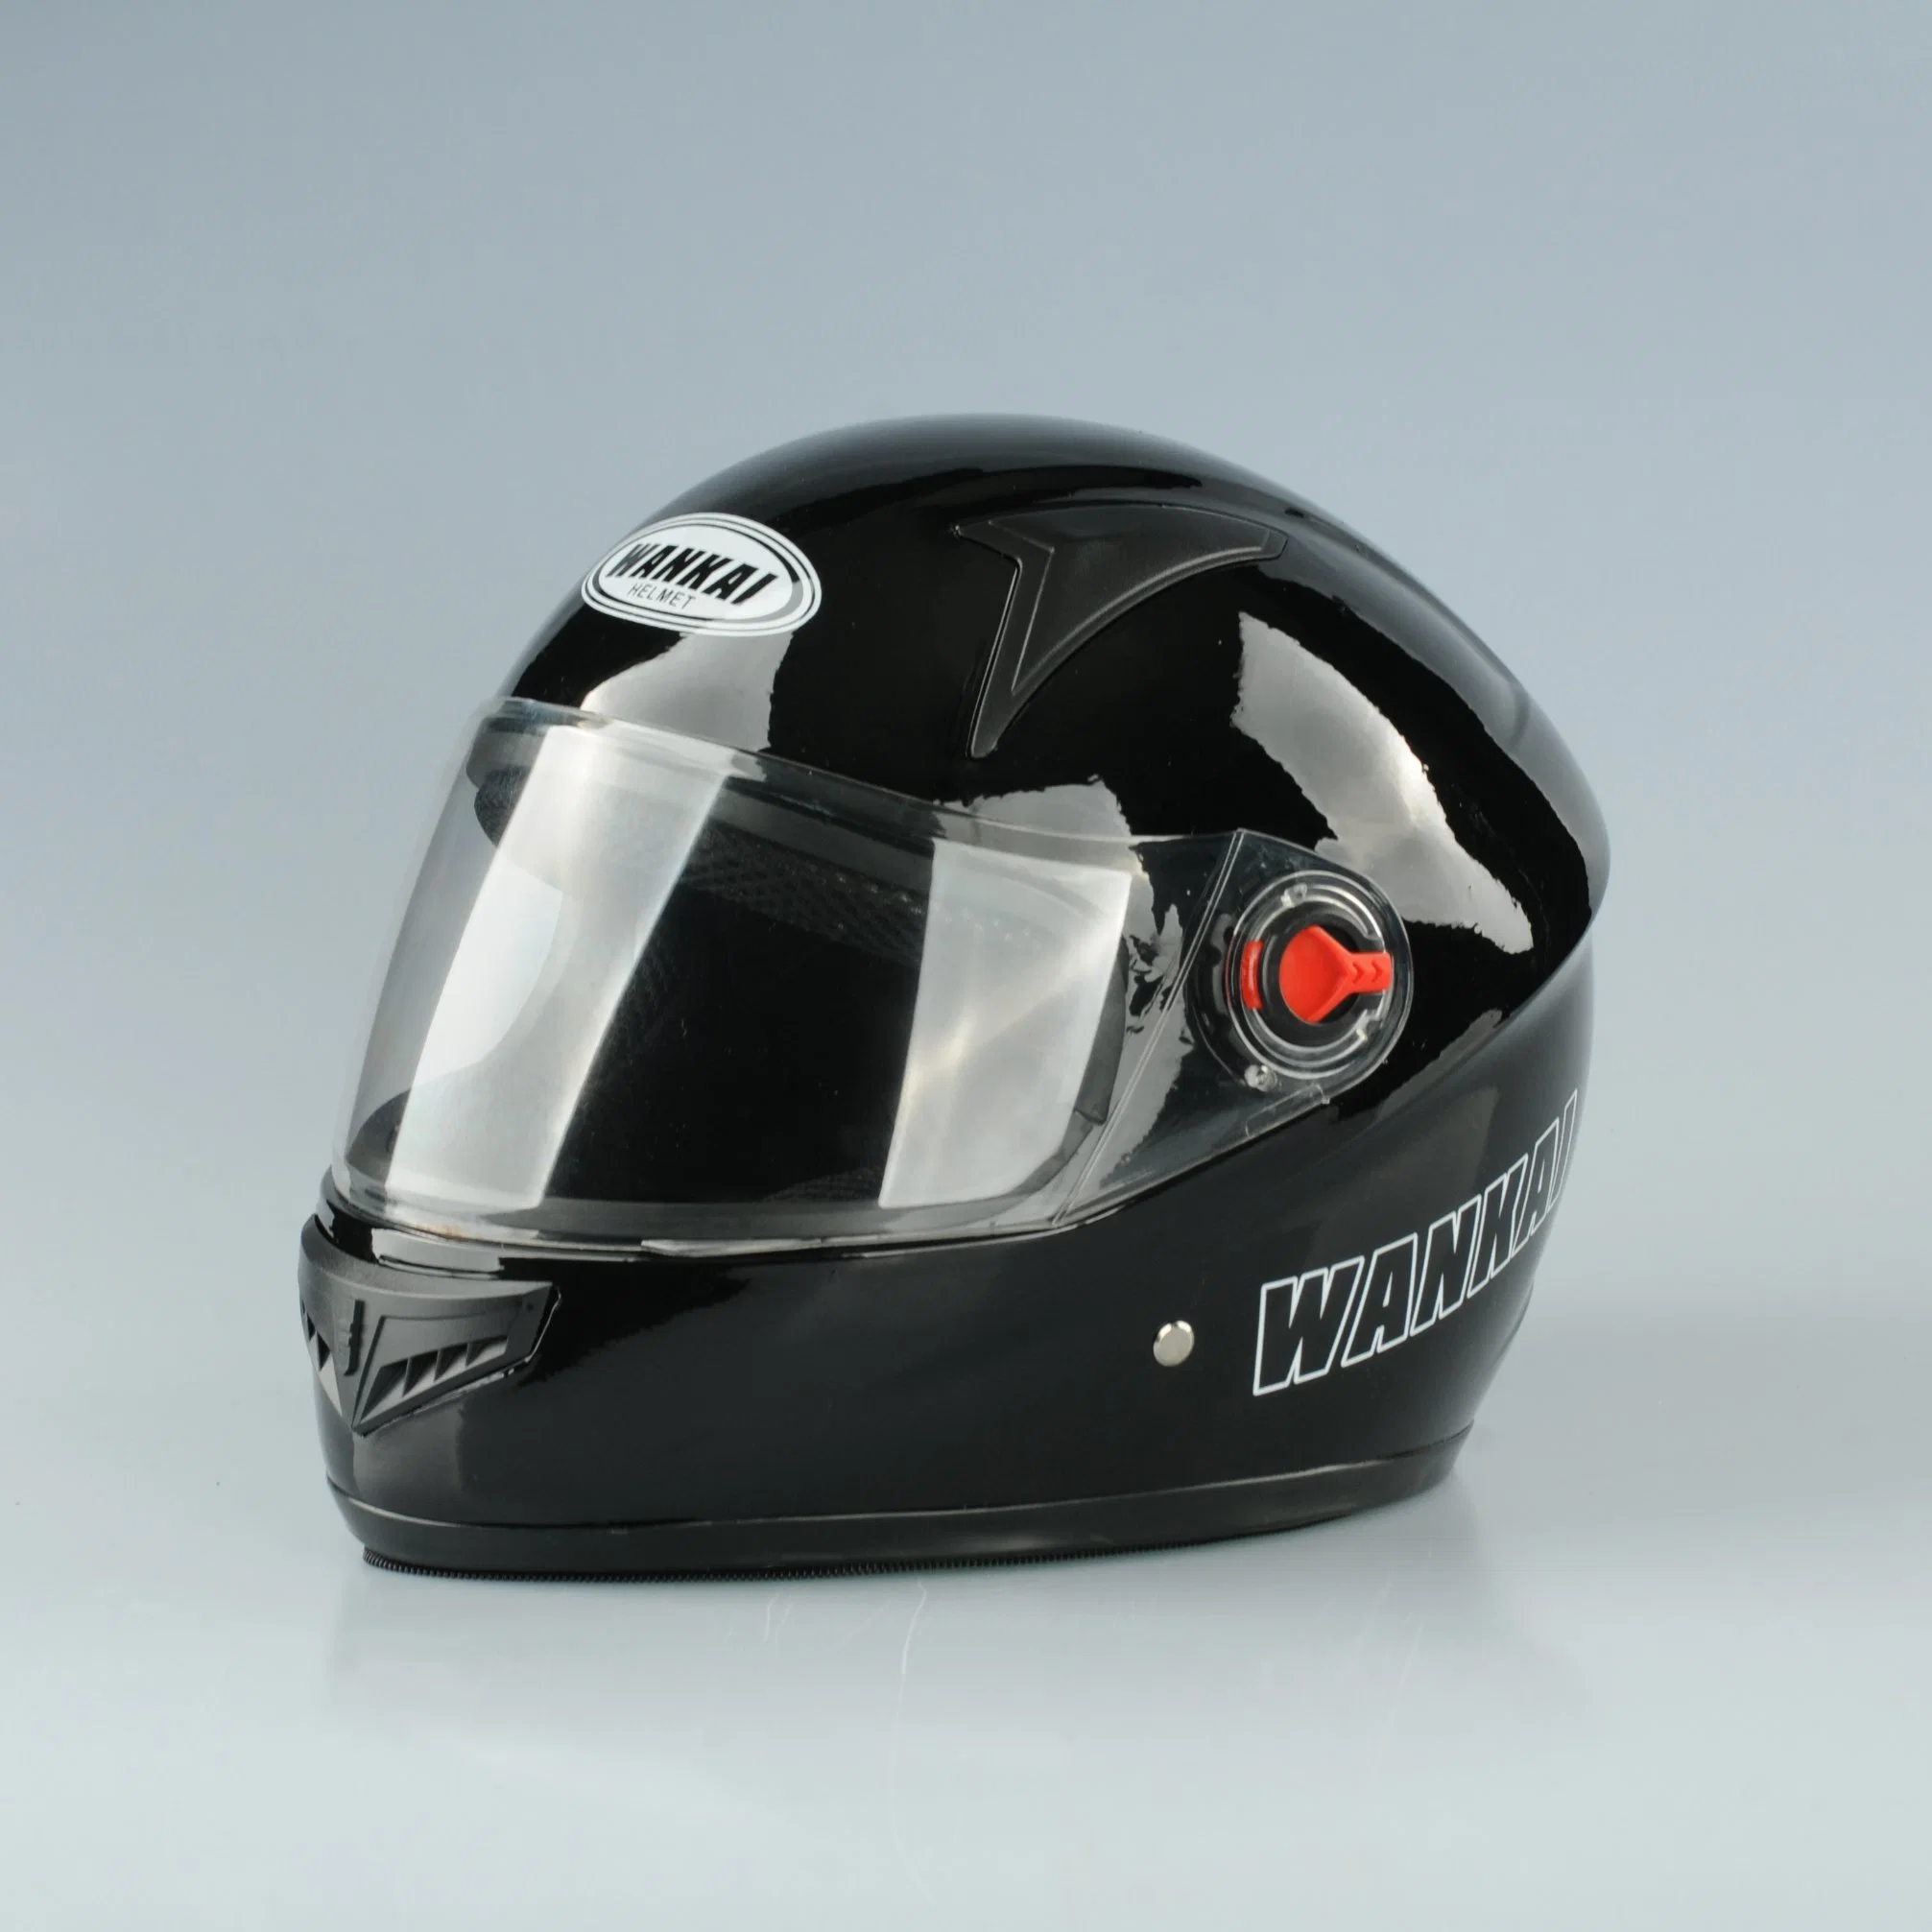 Nuevo casco de PP para las motocicletas, bicicletas, motos eléctricas